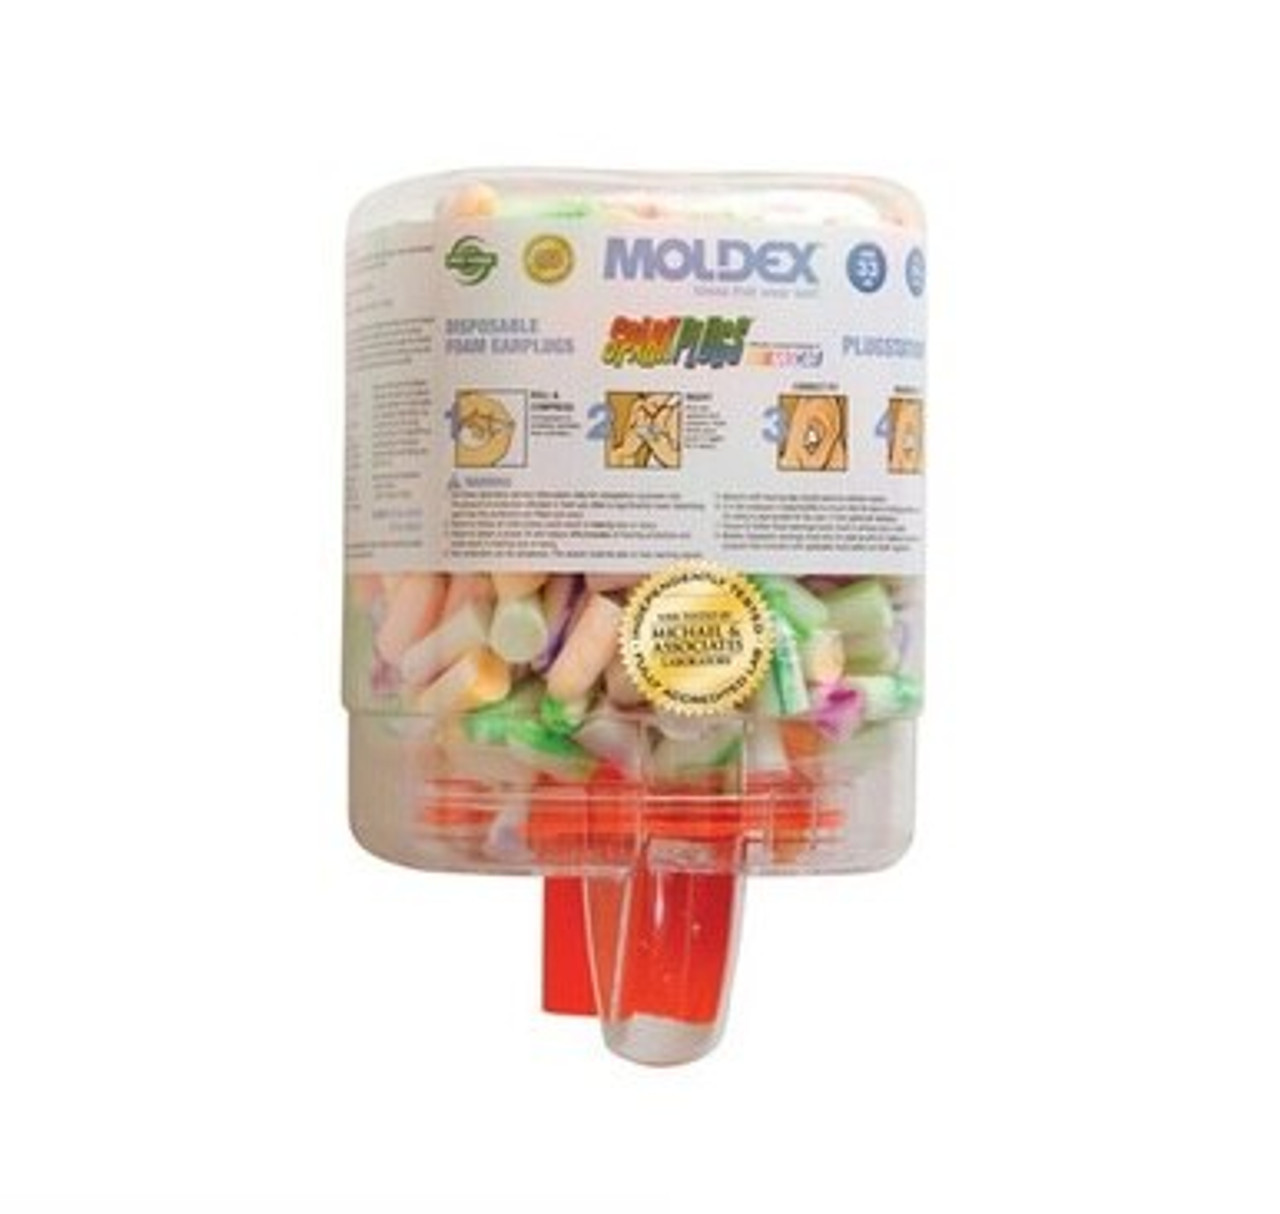 Moldex PlugStation SparkPlug Ear Plug Dispenser 6644